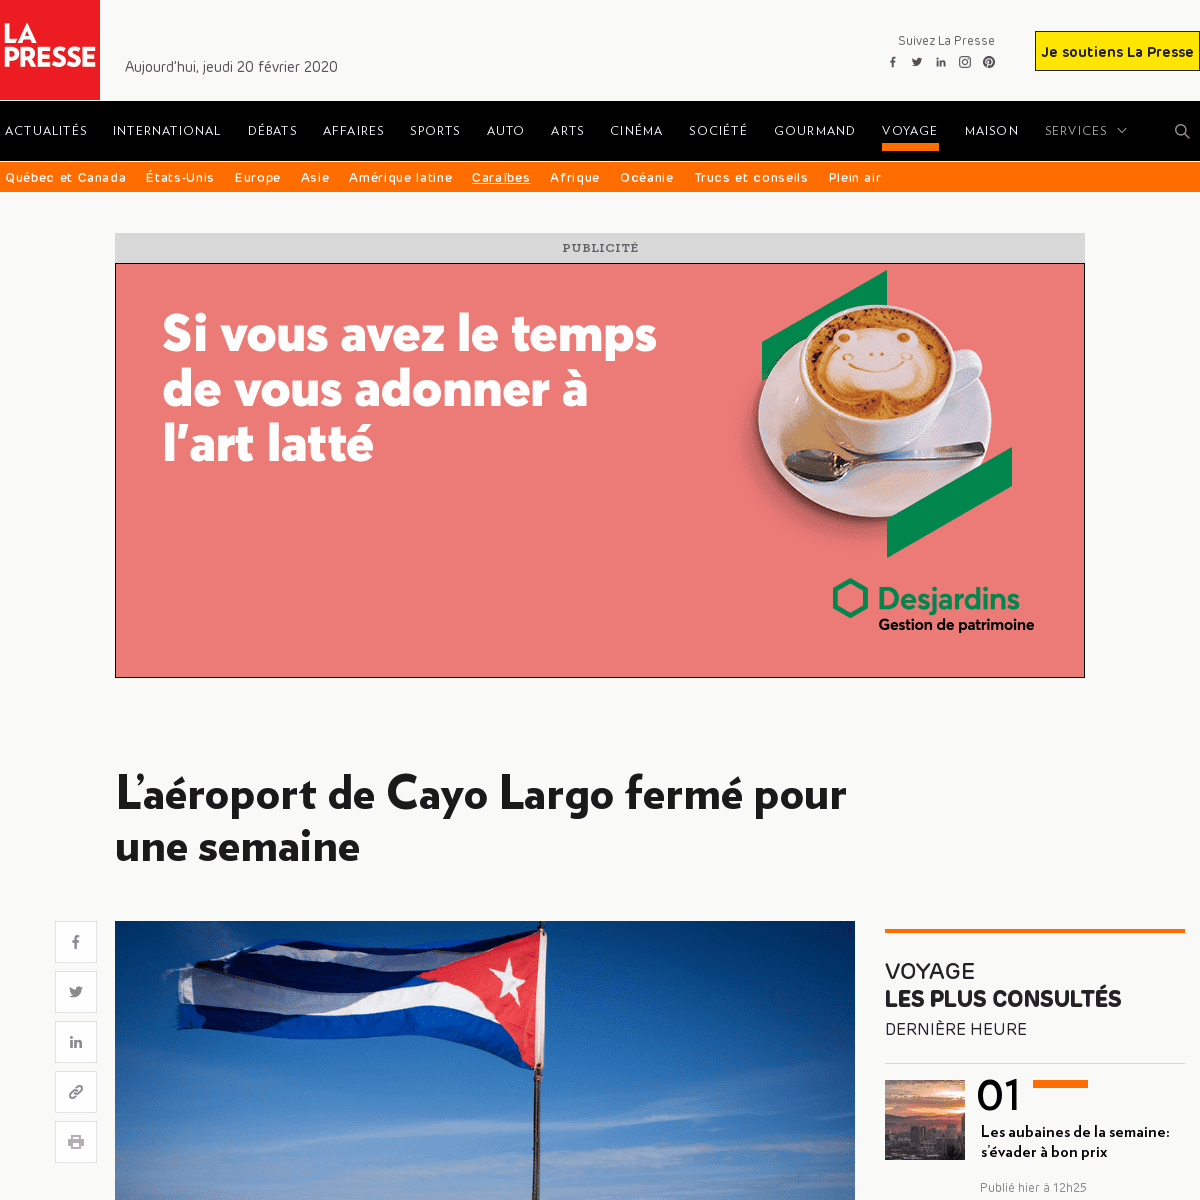 A complete backup of www.lapresse.ca/voyage/caraibes/cuba/202002/19/01-5261547-laeroport-de-cayo-largo-ferme-pour-une-semaine.ph